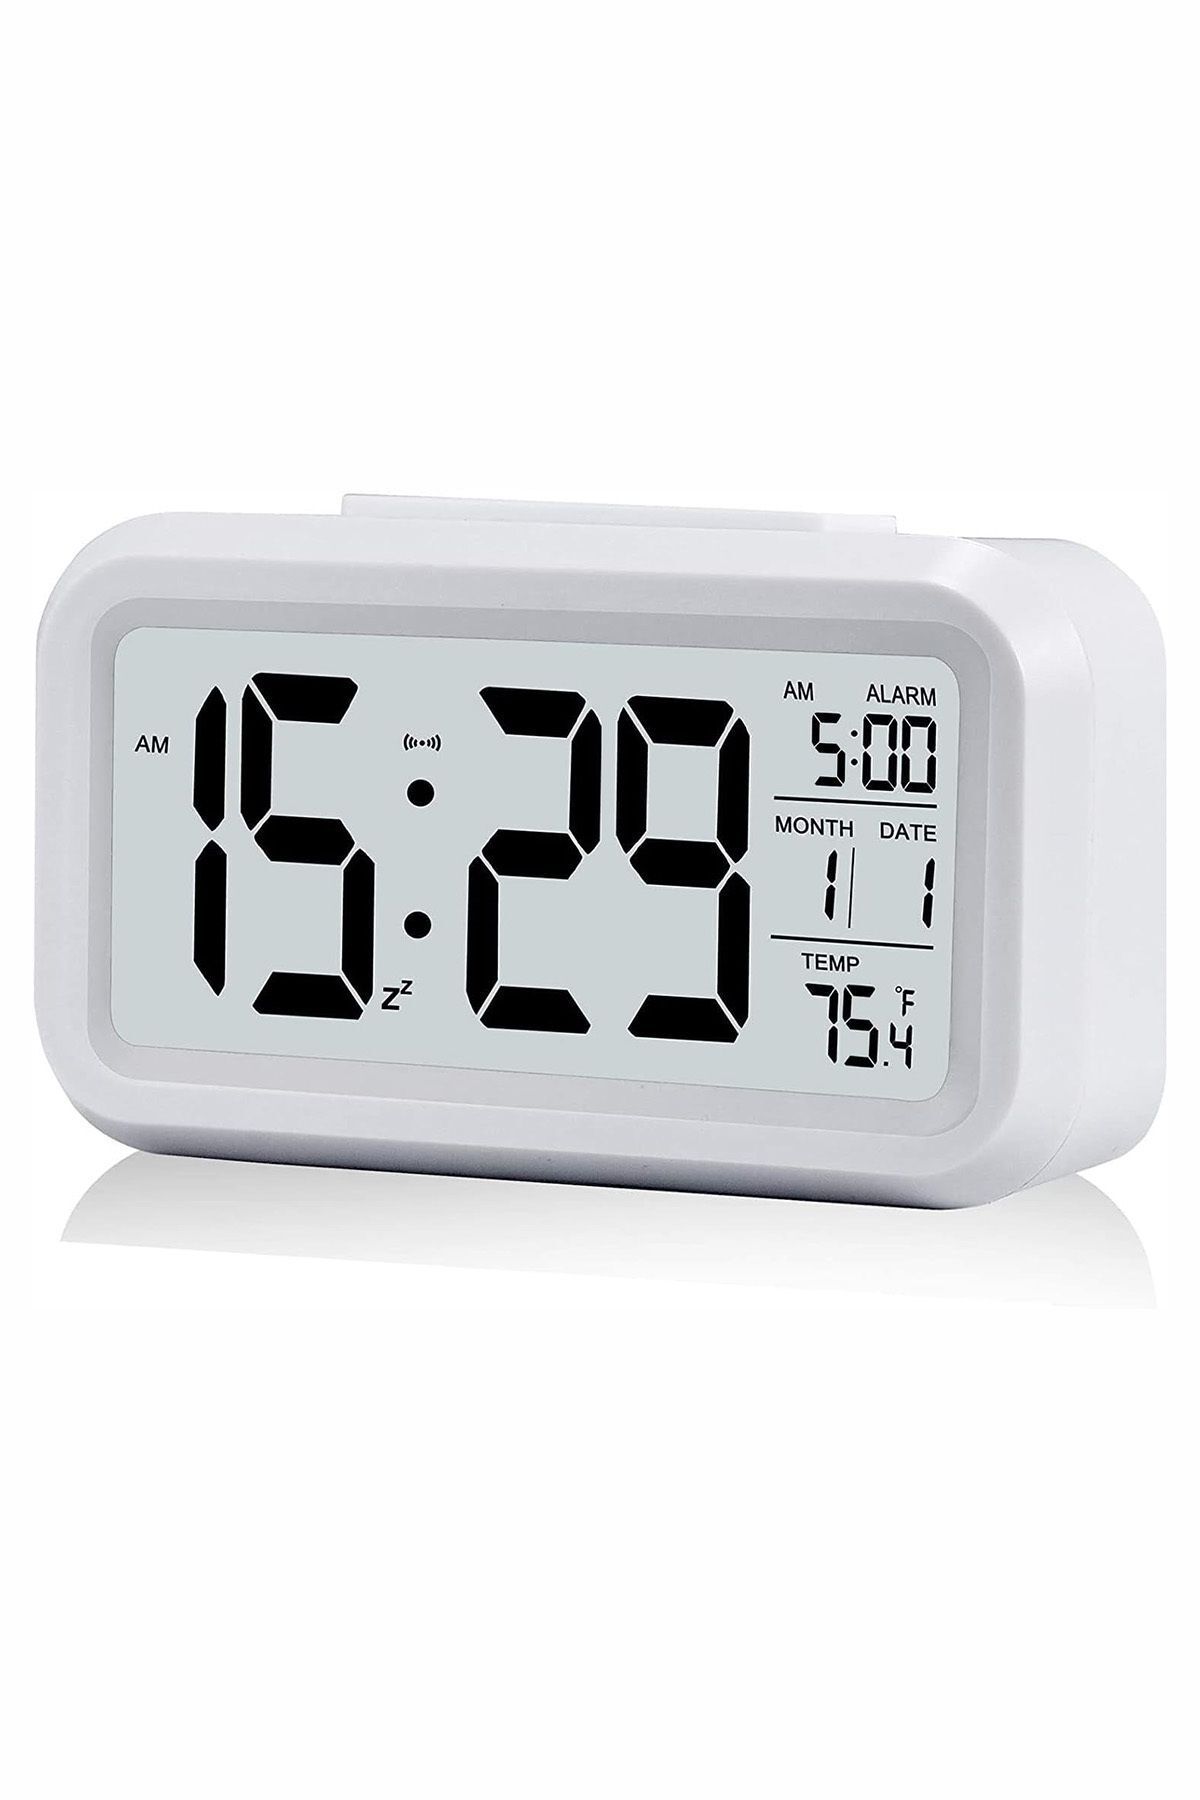 Benefse Dekoratif Ayarlı Dijital Masa Saati Alarmlı Işıklı Termometre Sensörlü Beyaz Çalar Saat